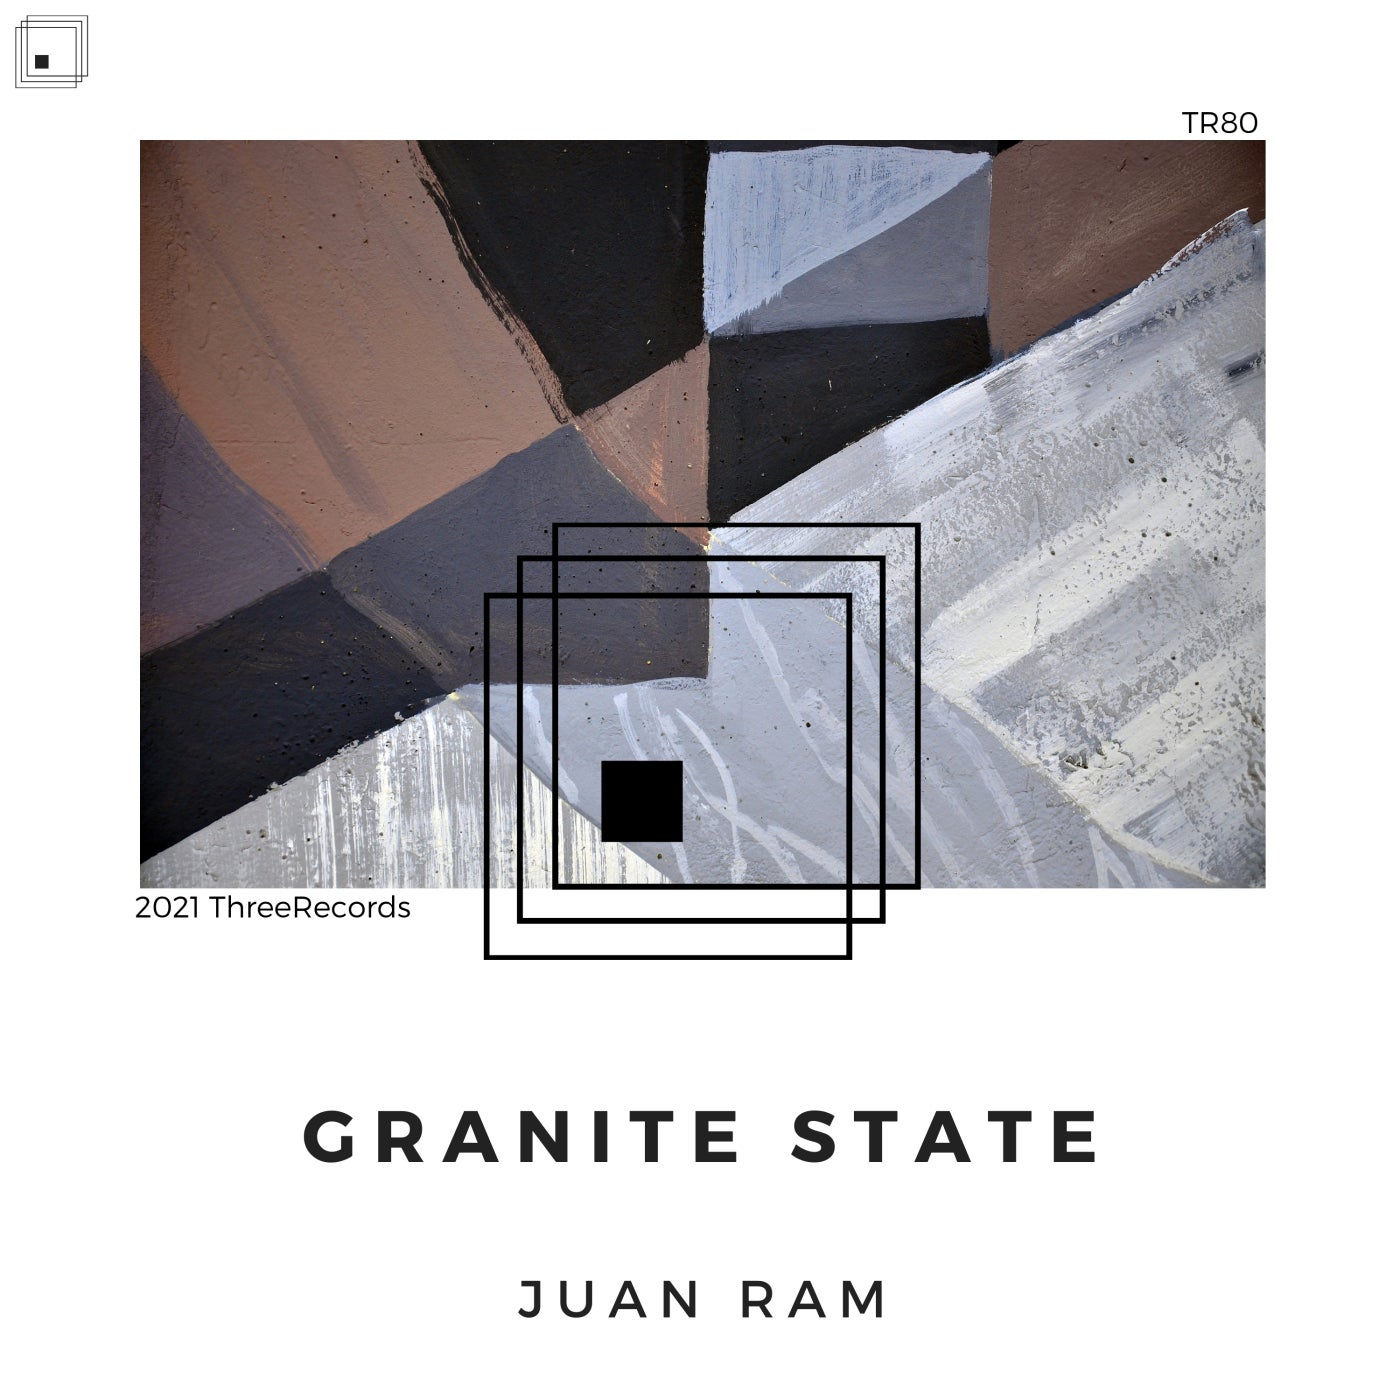 Juan Ram - Granite State [TR80]